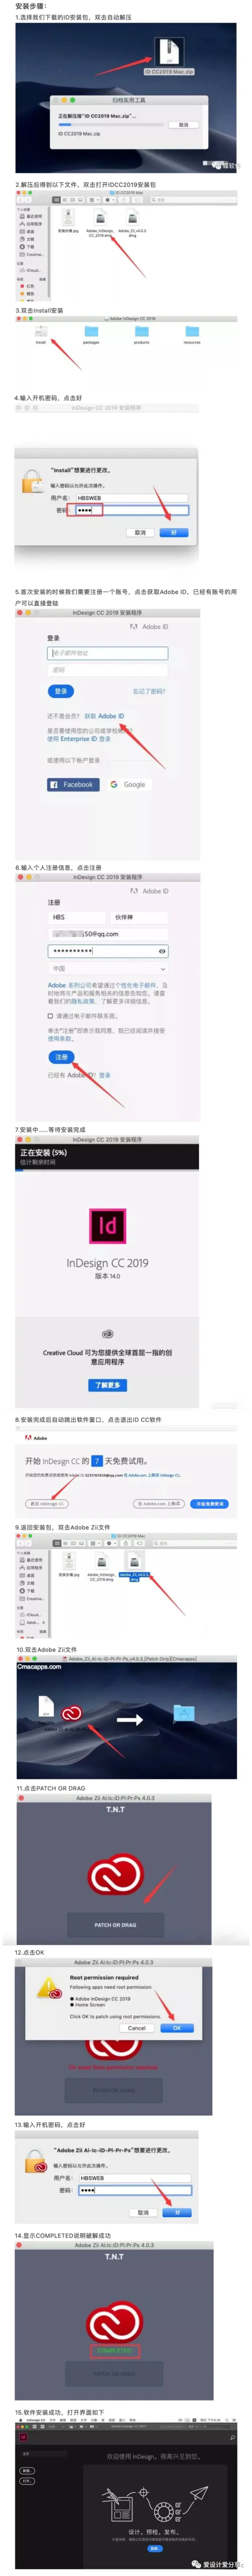 InDesign ID CC 2019插图